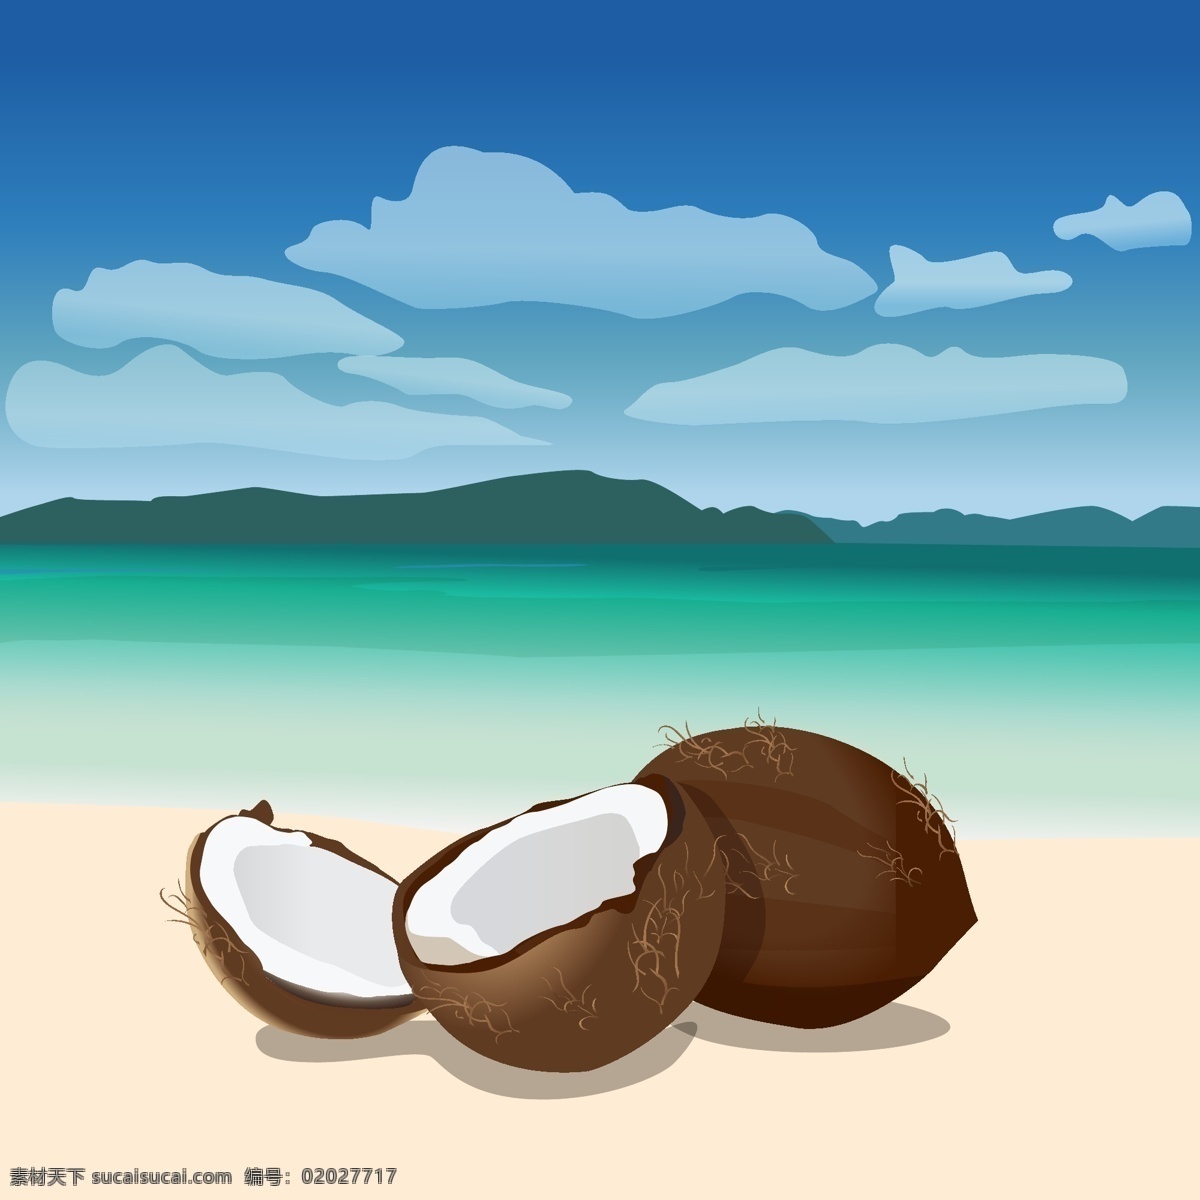 卡通 椰子 背景 图案 椰子背景素材 广告设计模板 ai素材 卡通素材 展板 大海 沙滩 夏天 炎热 海边